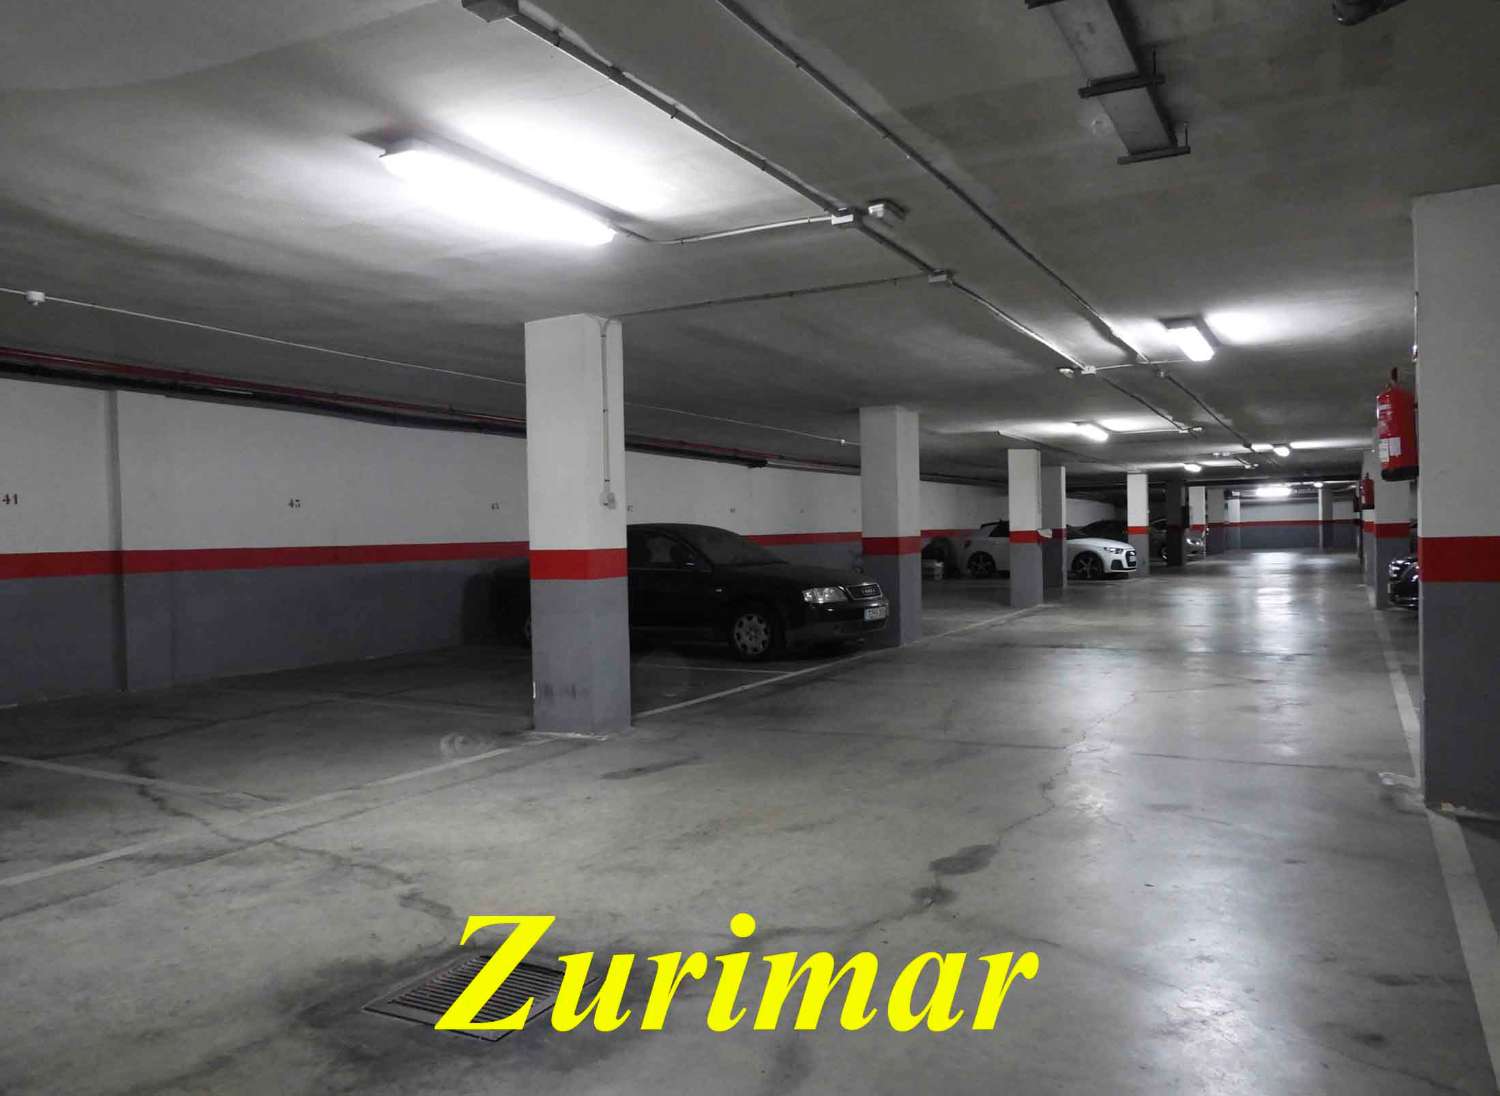 Duplex for sale in El Sabinar - Urbanizaciones - Las Marinas (Roquetas de Mar)